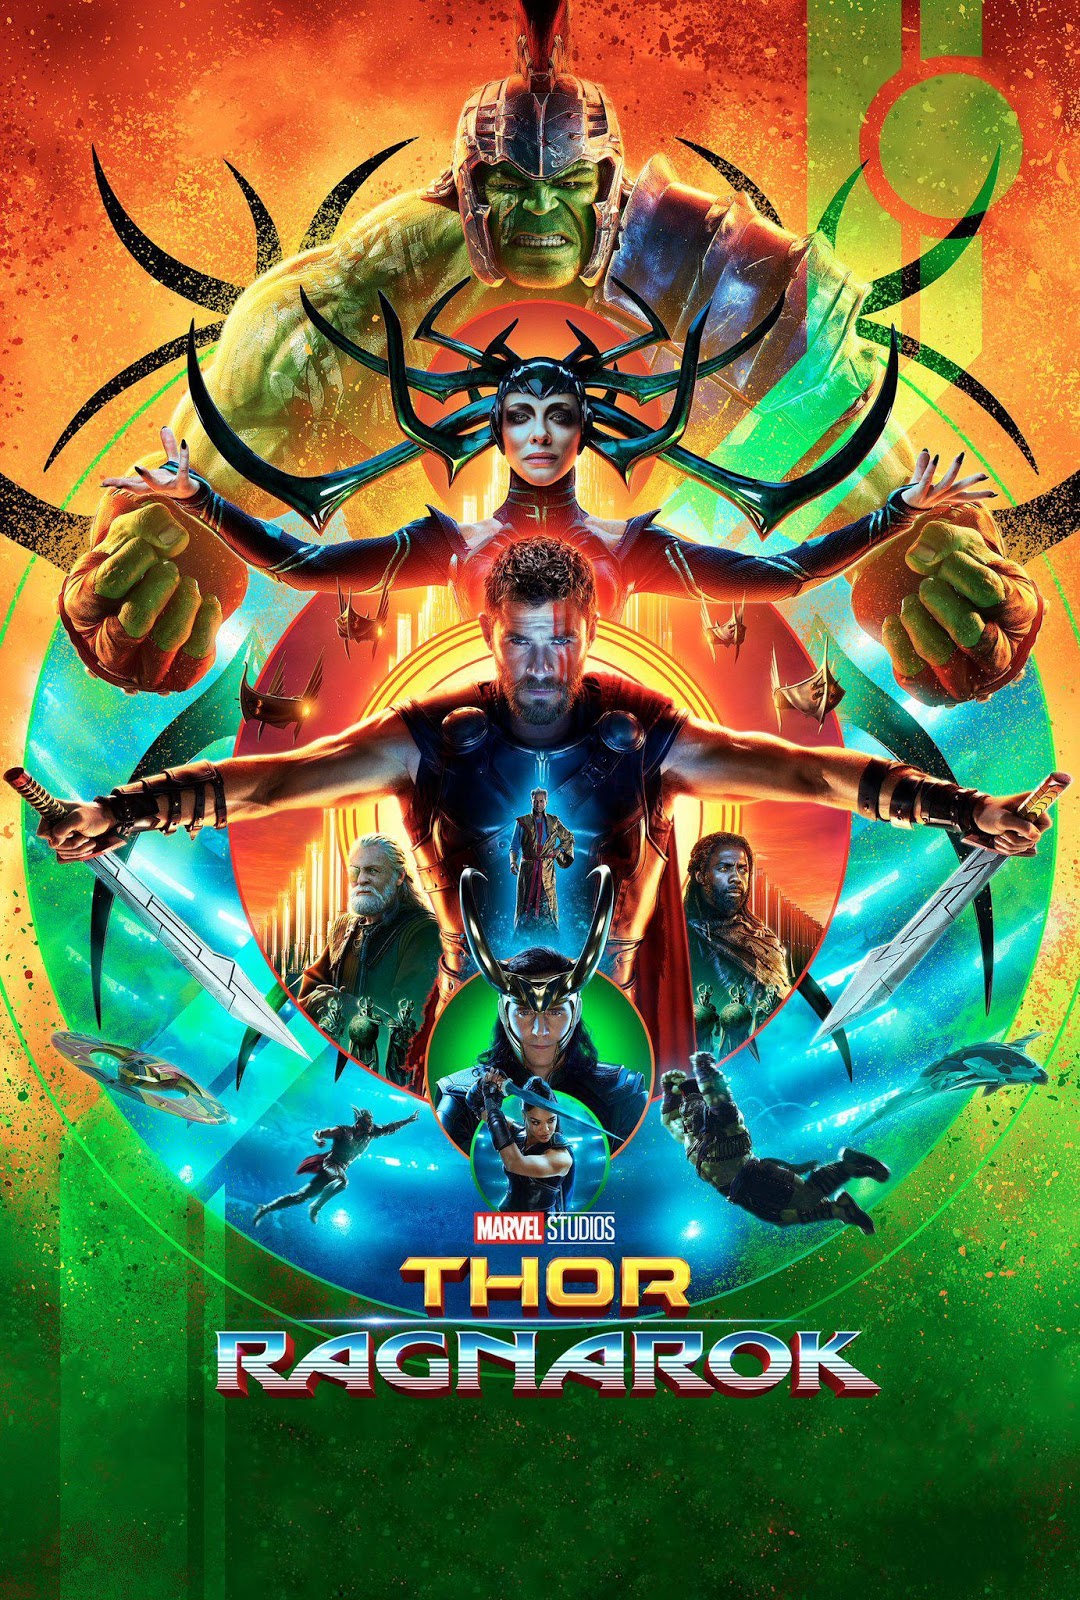 Thor: Ragnarok Film Review